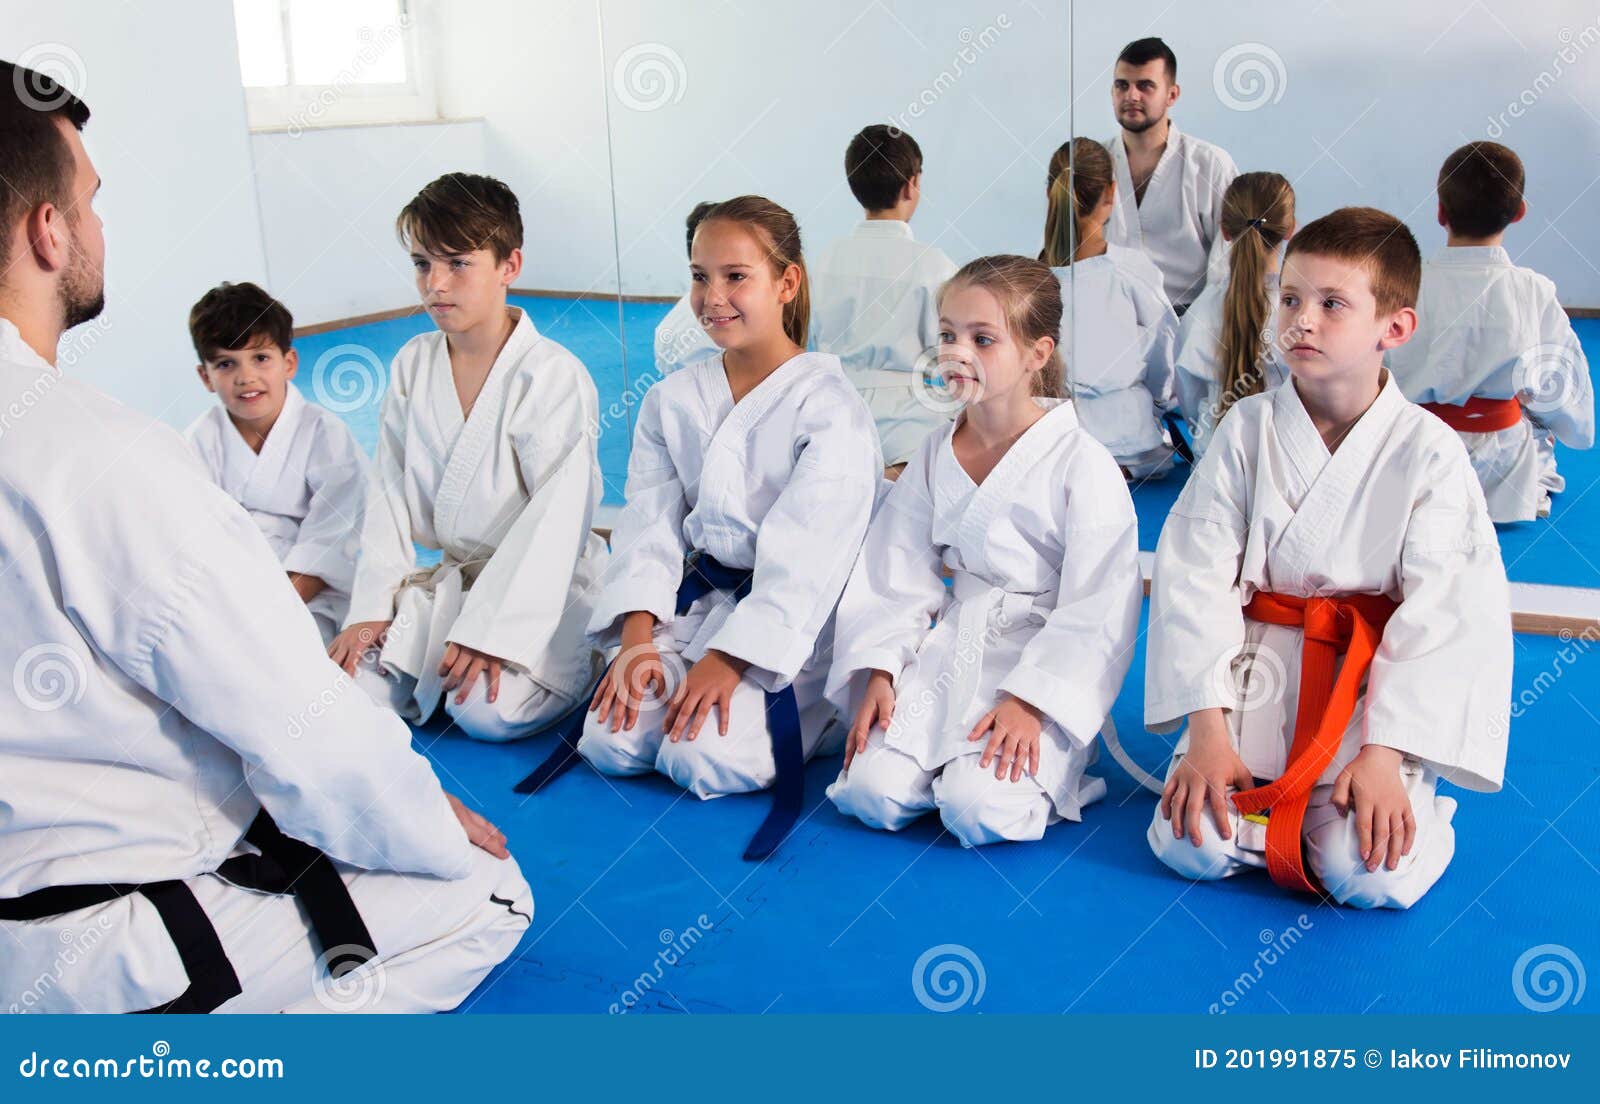 por no mencionar mosquito consenso Los Niños Pequeños En Clase De Karate Imagen de archivo - Imagen de  deportes, clase: 201991875